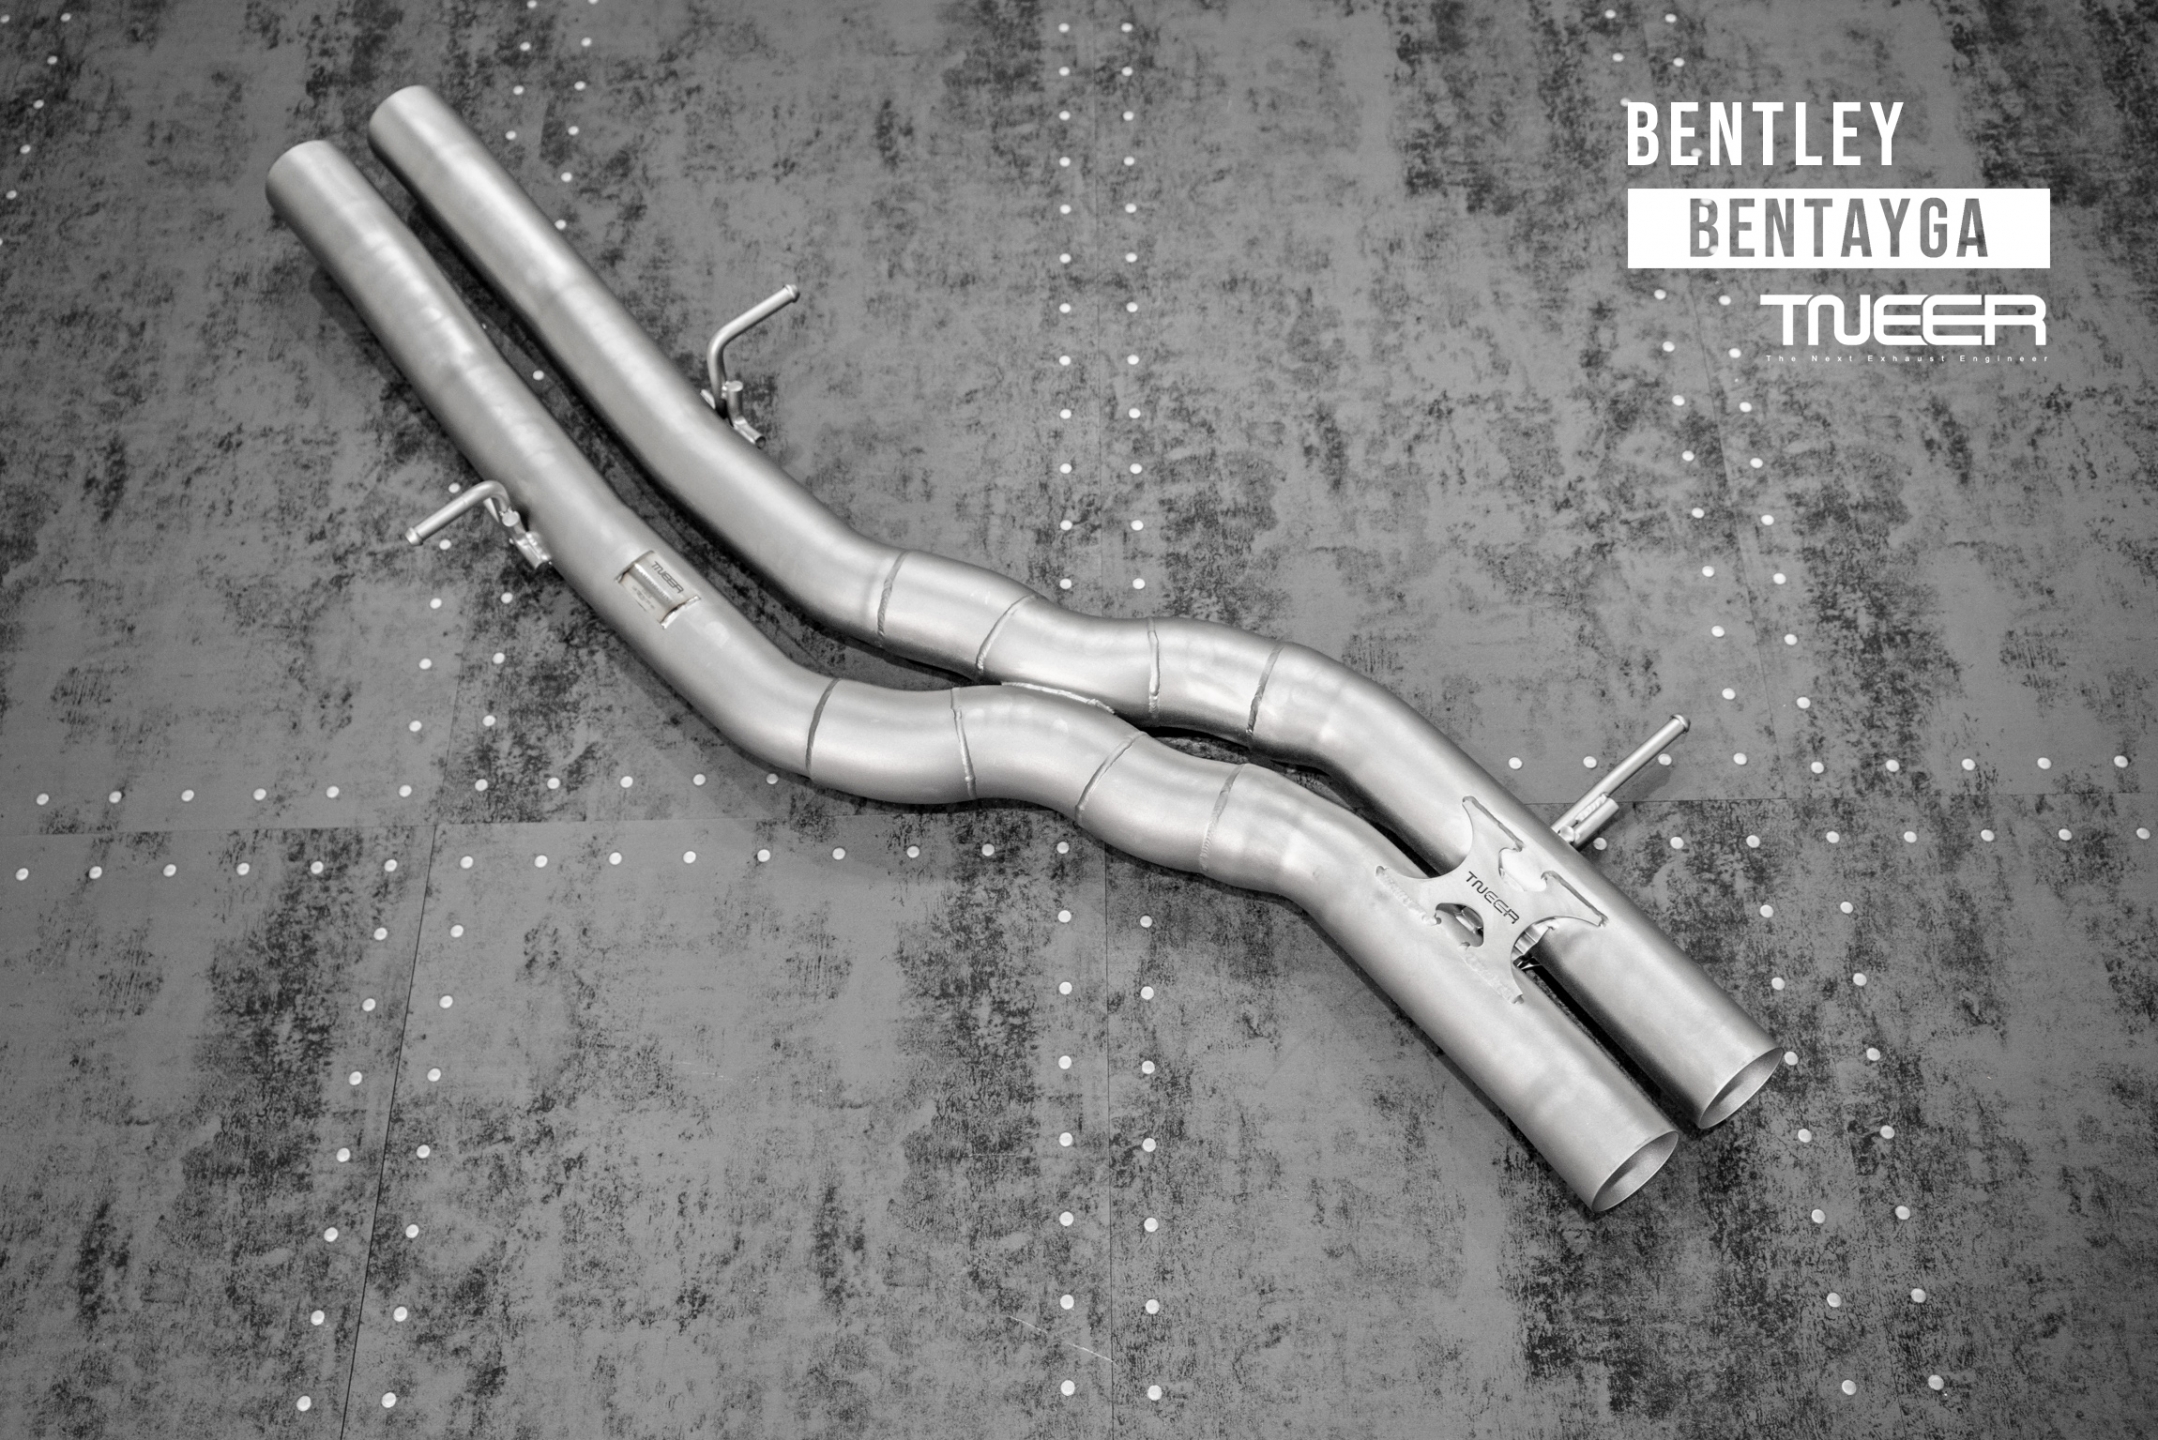 Bentley Bentayga V8 TNEER Downpipes